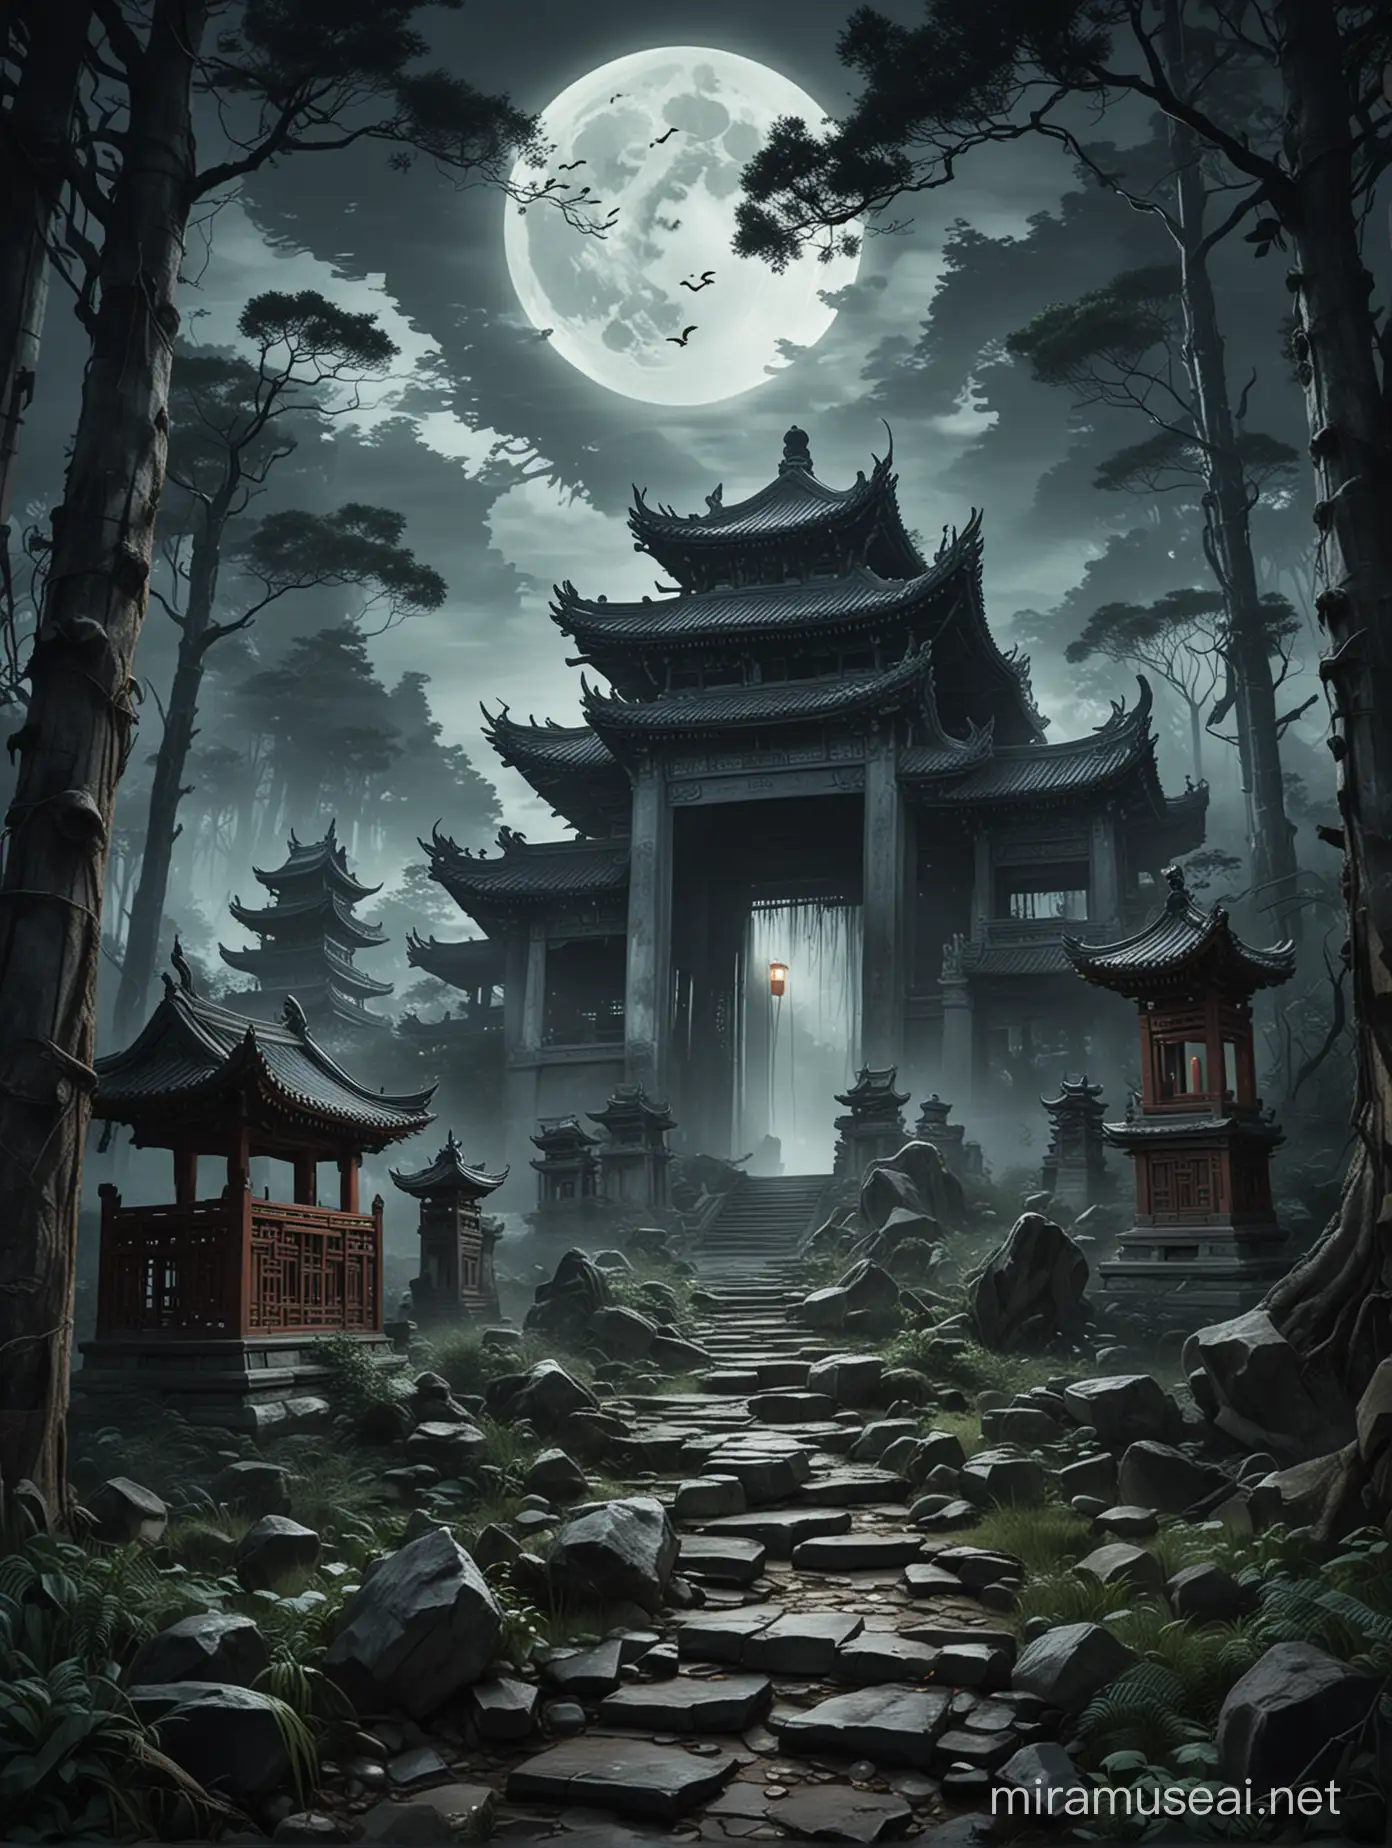 生成一张
悬疑、鬼怪类小说配封面图，有残缺的中国元素的破庙，有树林，有月光，有恐怖动物